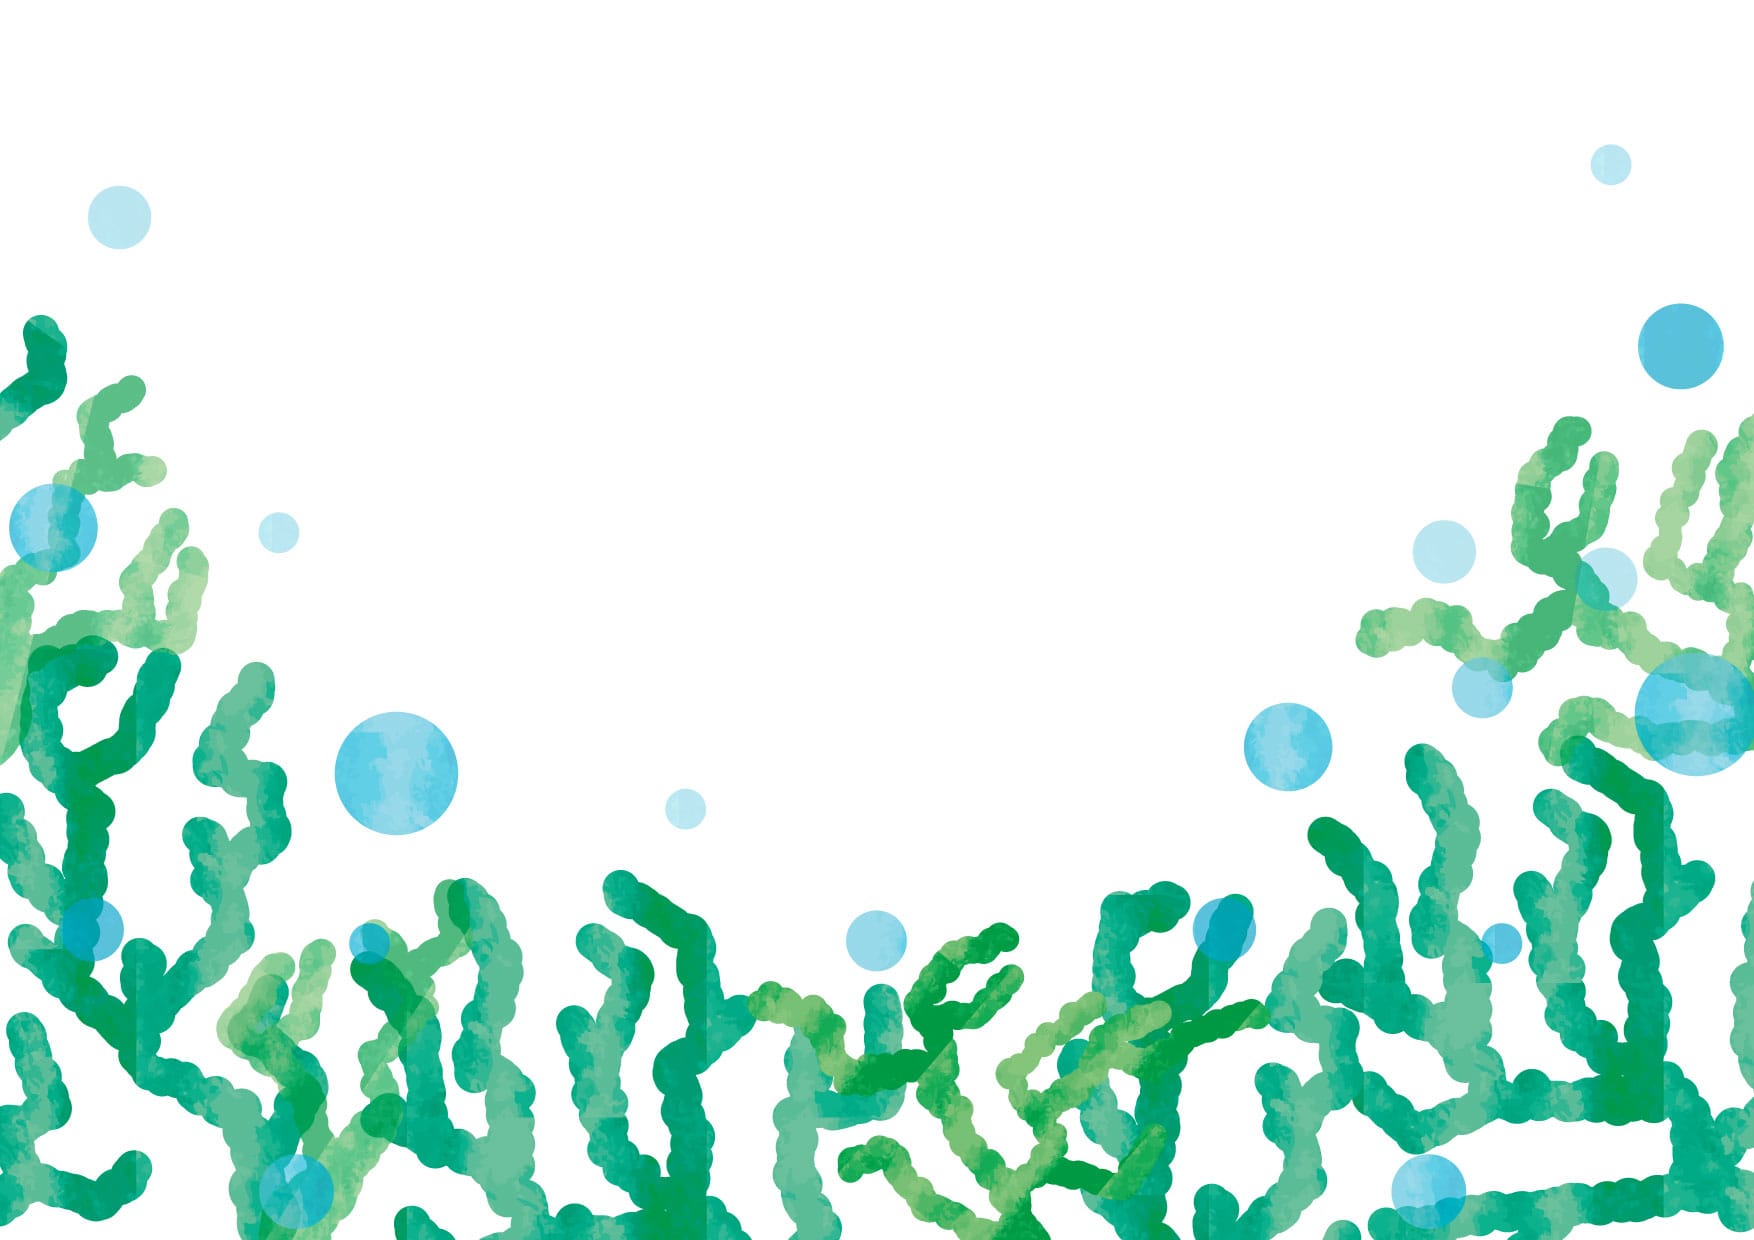 可愛いイラスト無料 珊瑚 さんご 背景 緑色 Free Illustration Coral Background Green 公式 イラスト 素材サイト イラストダウンロード